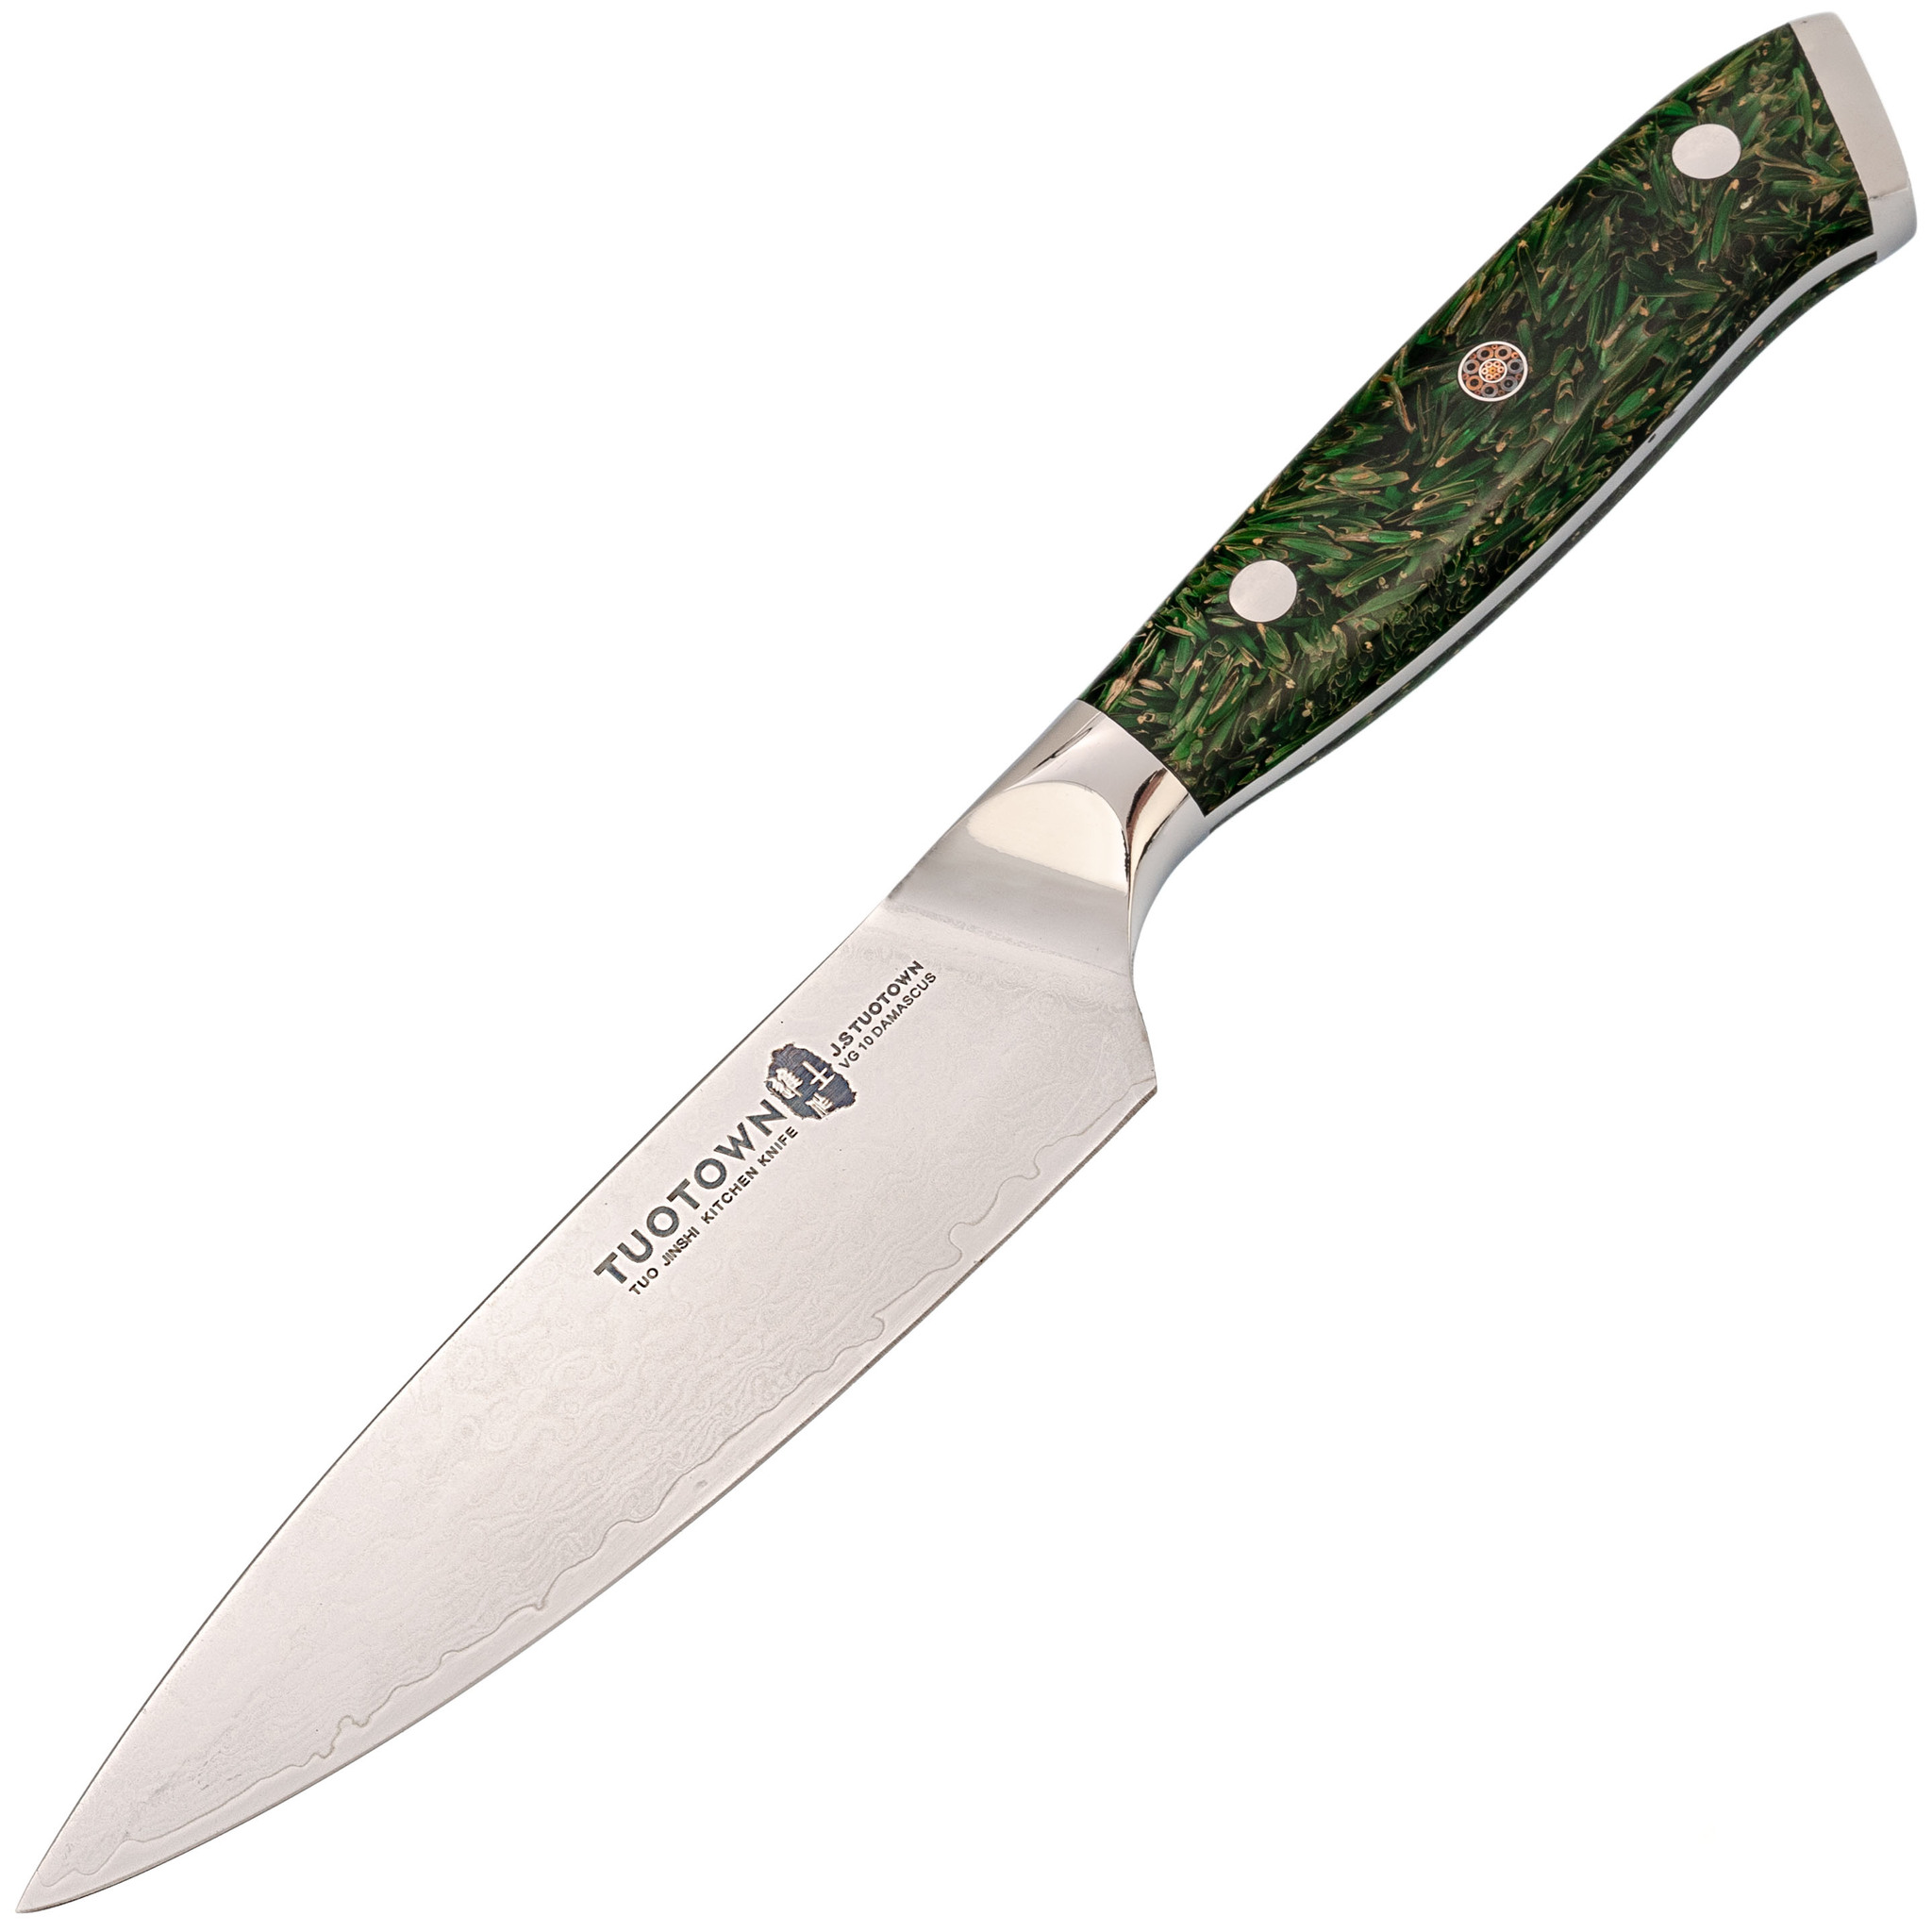 Кухонный нож Tuotown, сталь VG10, обкладка Damascus, рукоять акрил, зеленый складной нож civivi appalachian drifter ii сталь damascus carbon fiber g10